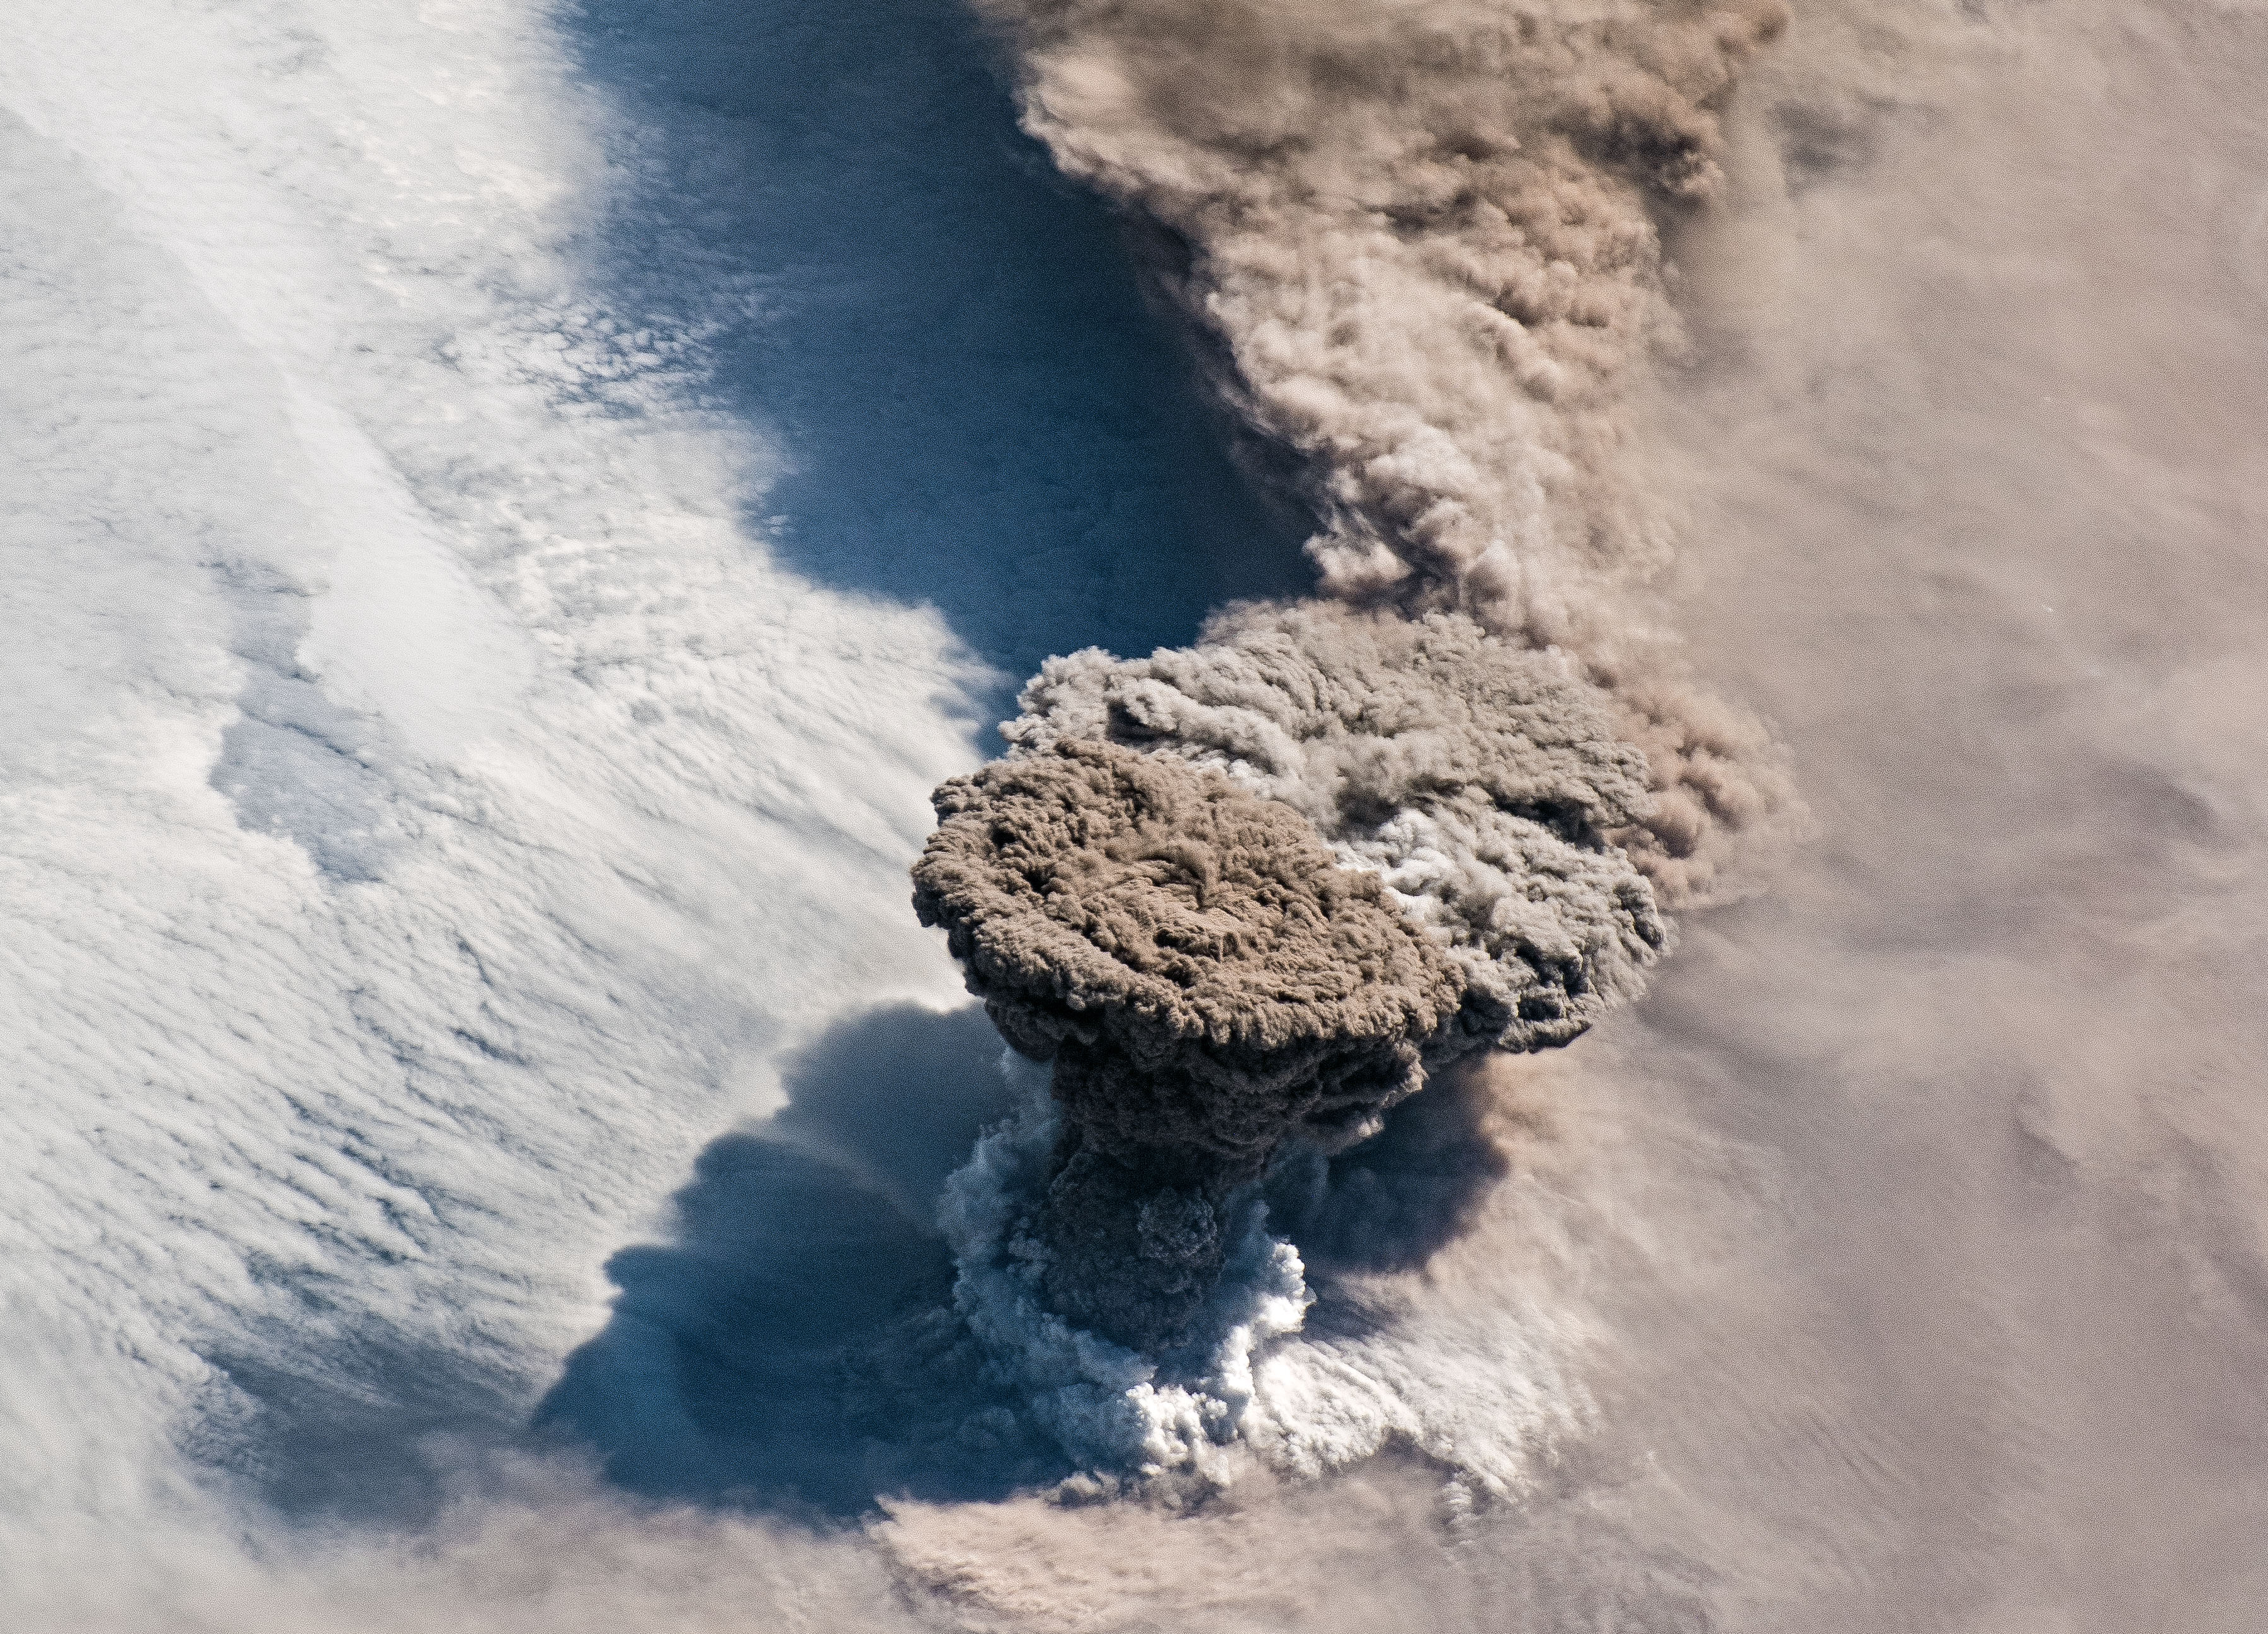 Lélegzetelállító képet lőttek az űrből a 95 év után kitörő Raikoke vulkánról